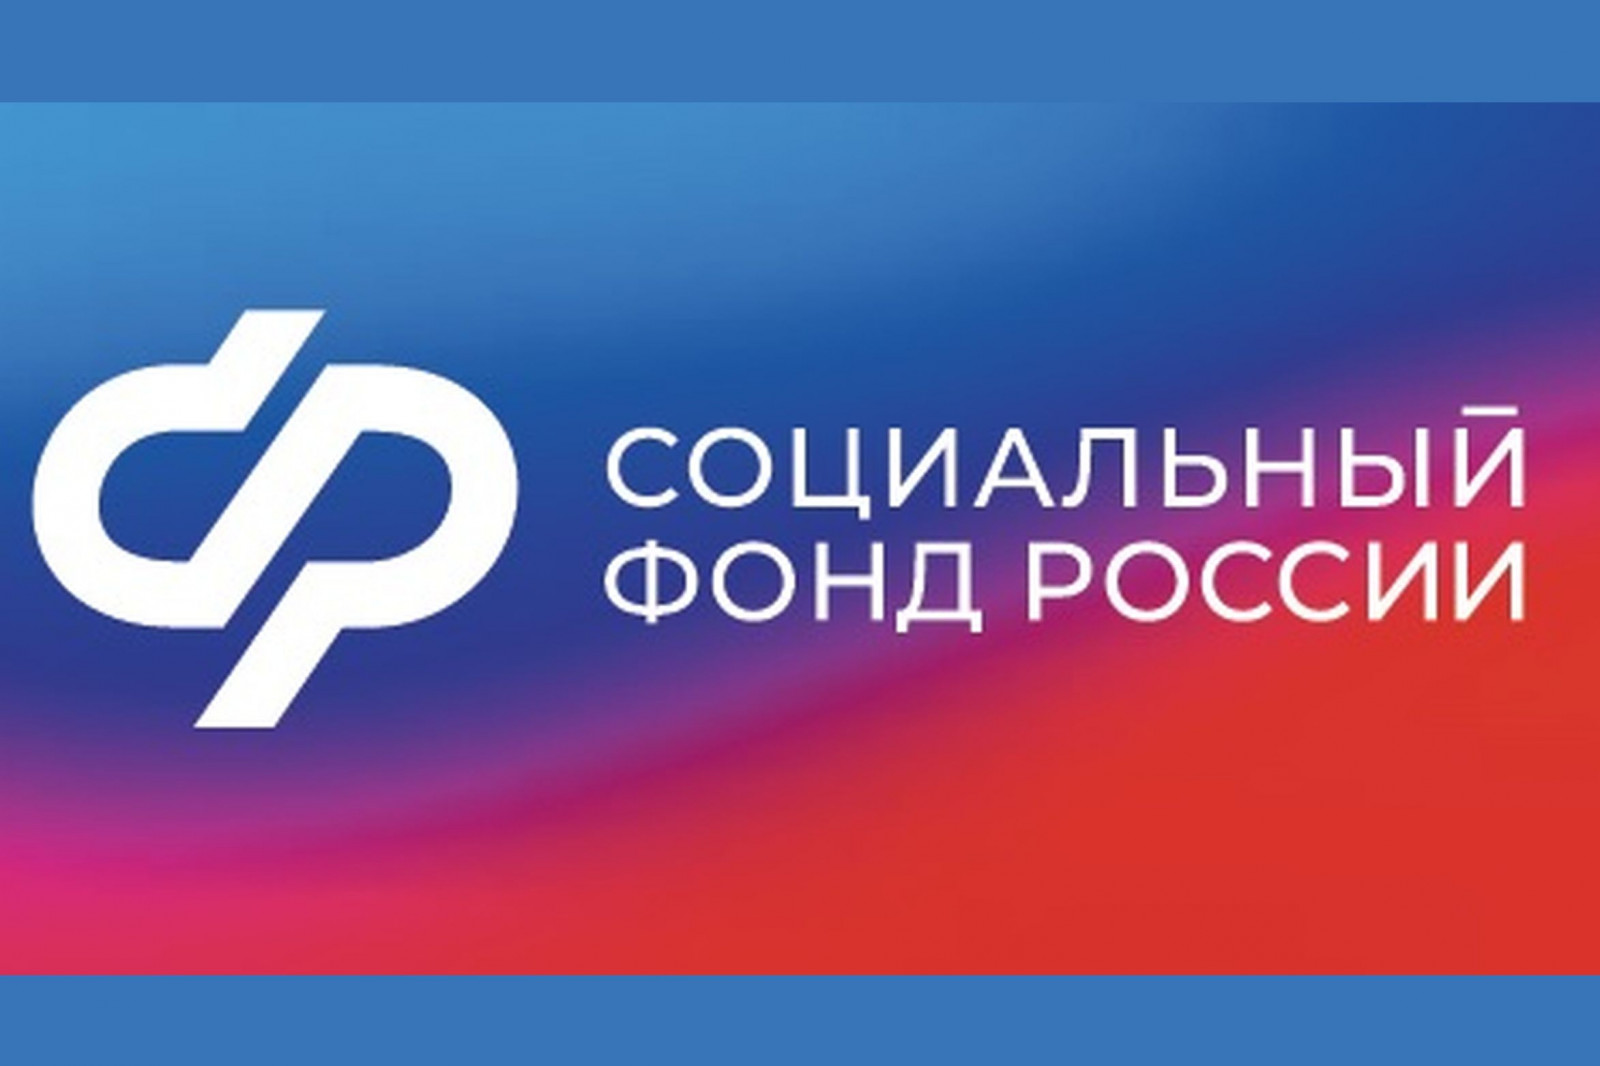 Более 100 жителей Калужской области получили от регионального ОСФР компенсацию стоимости полиса ОСАГО.